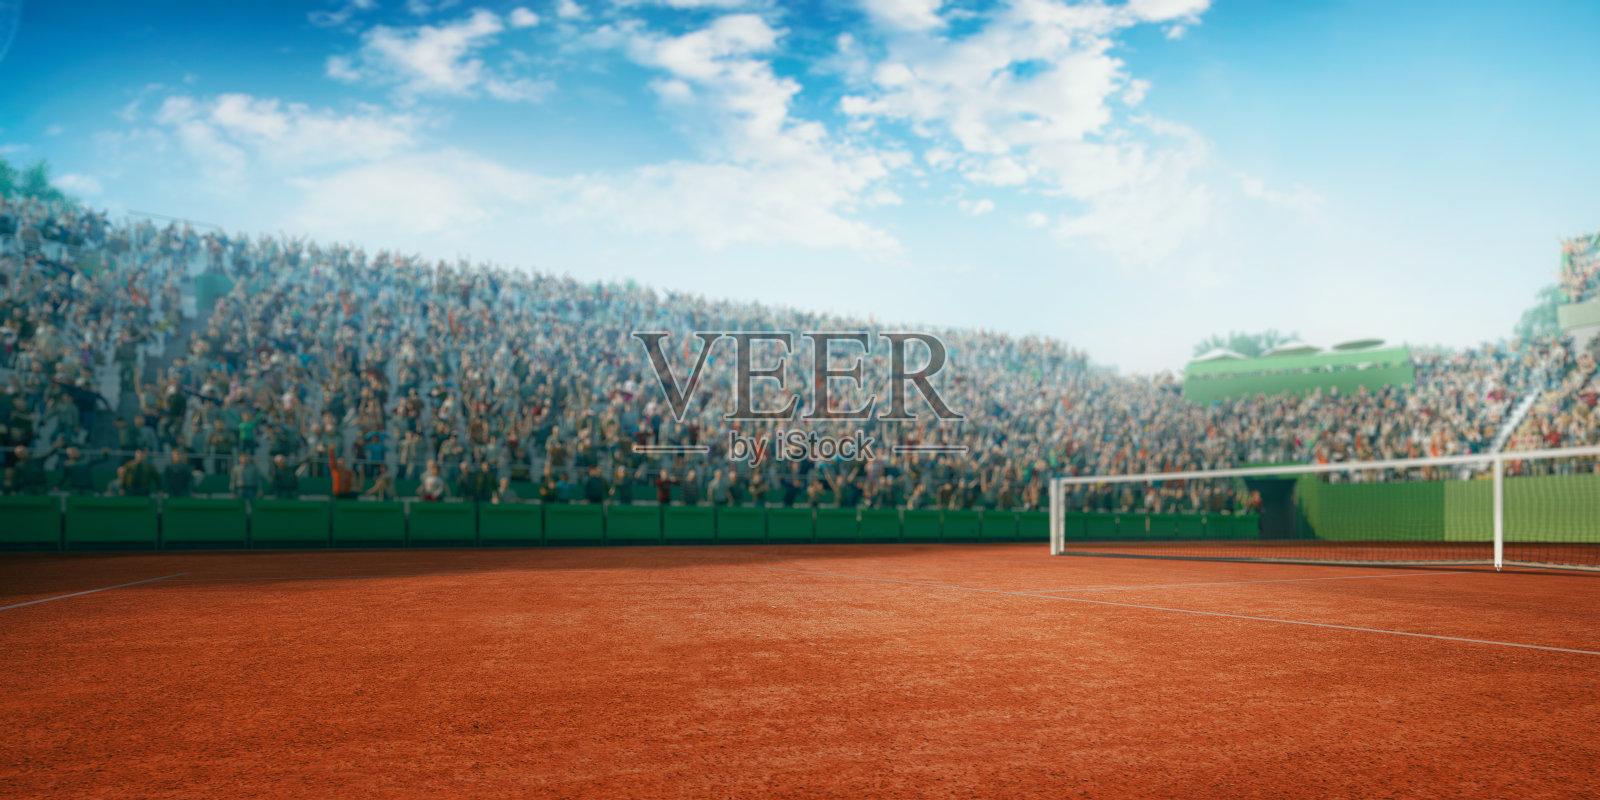 网球:球场照片摄影图片